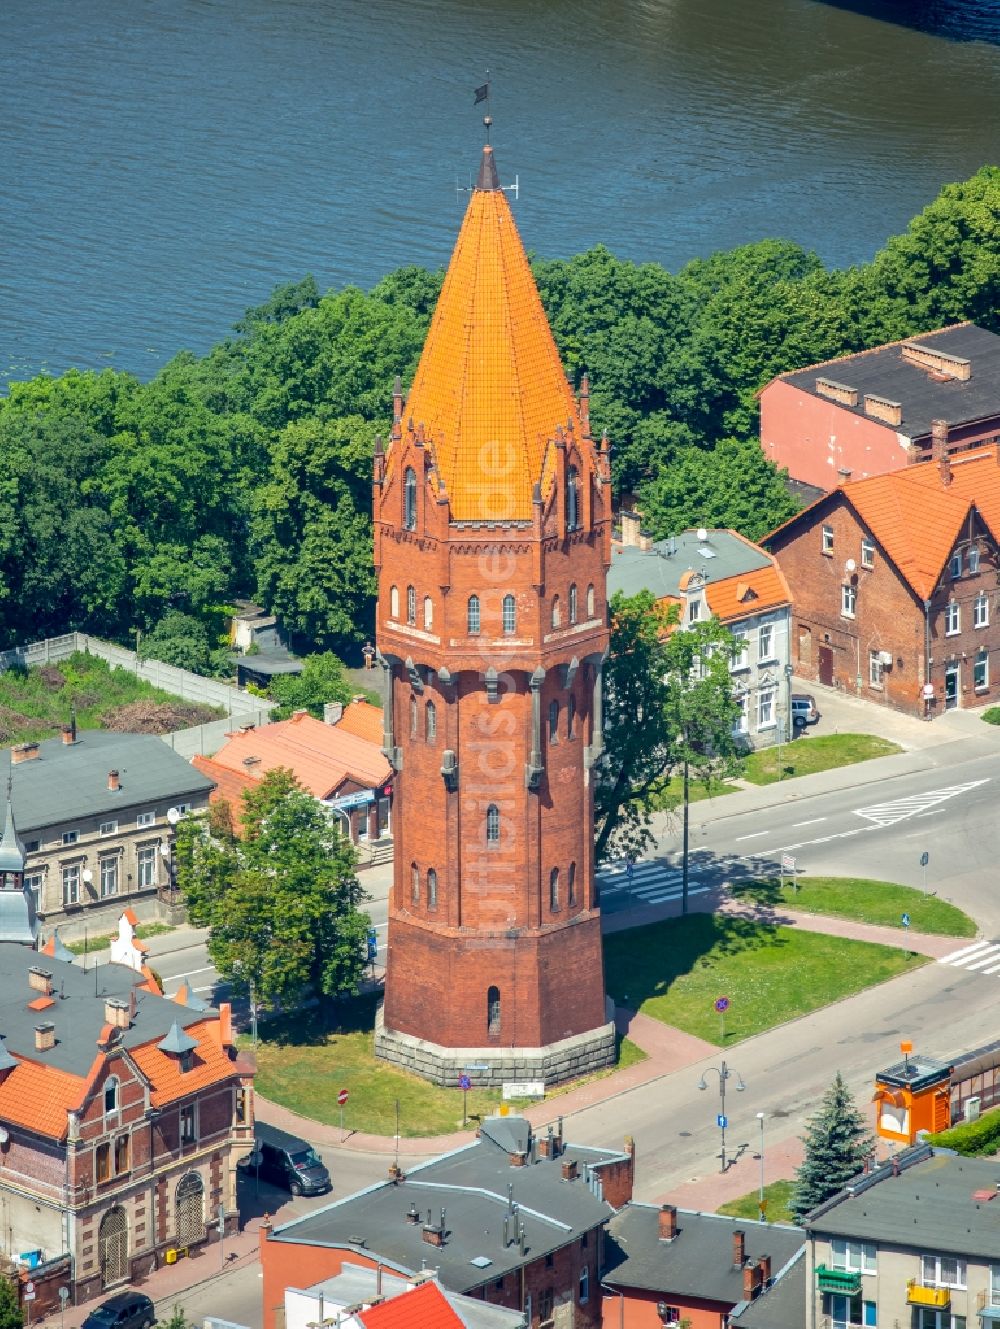 Luftbild Malbork Marienburg - Industriedenkmal Wasserturm in Malbork Marienburg in Pomorskie, Polen